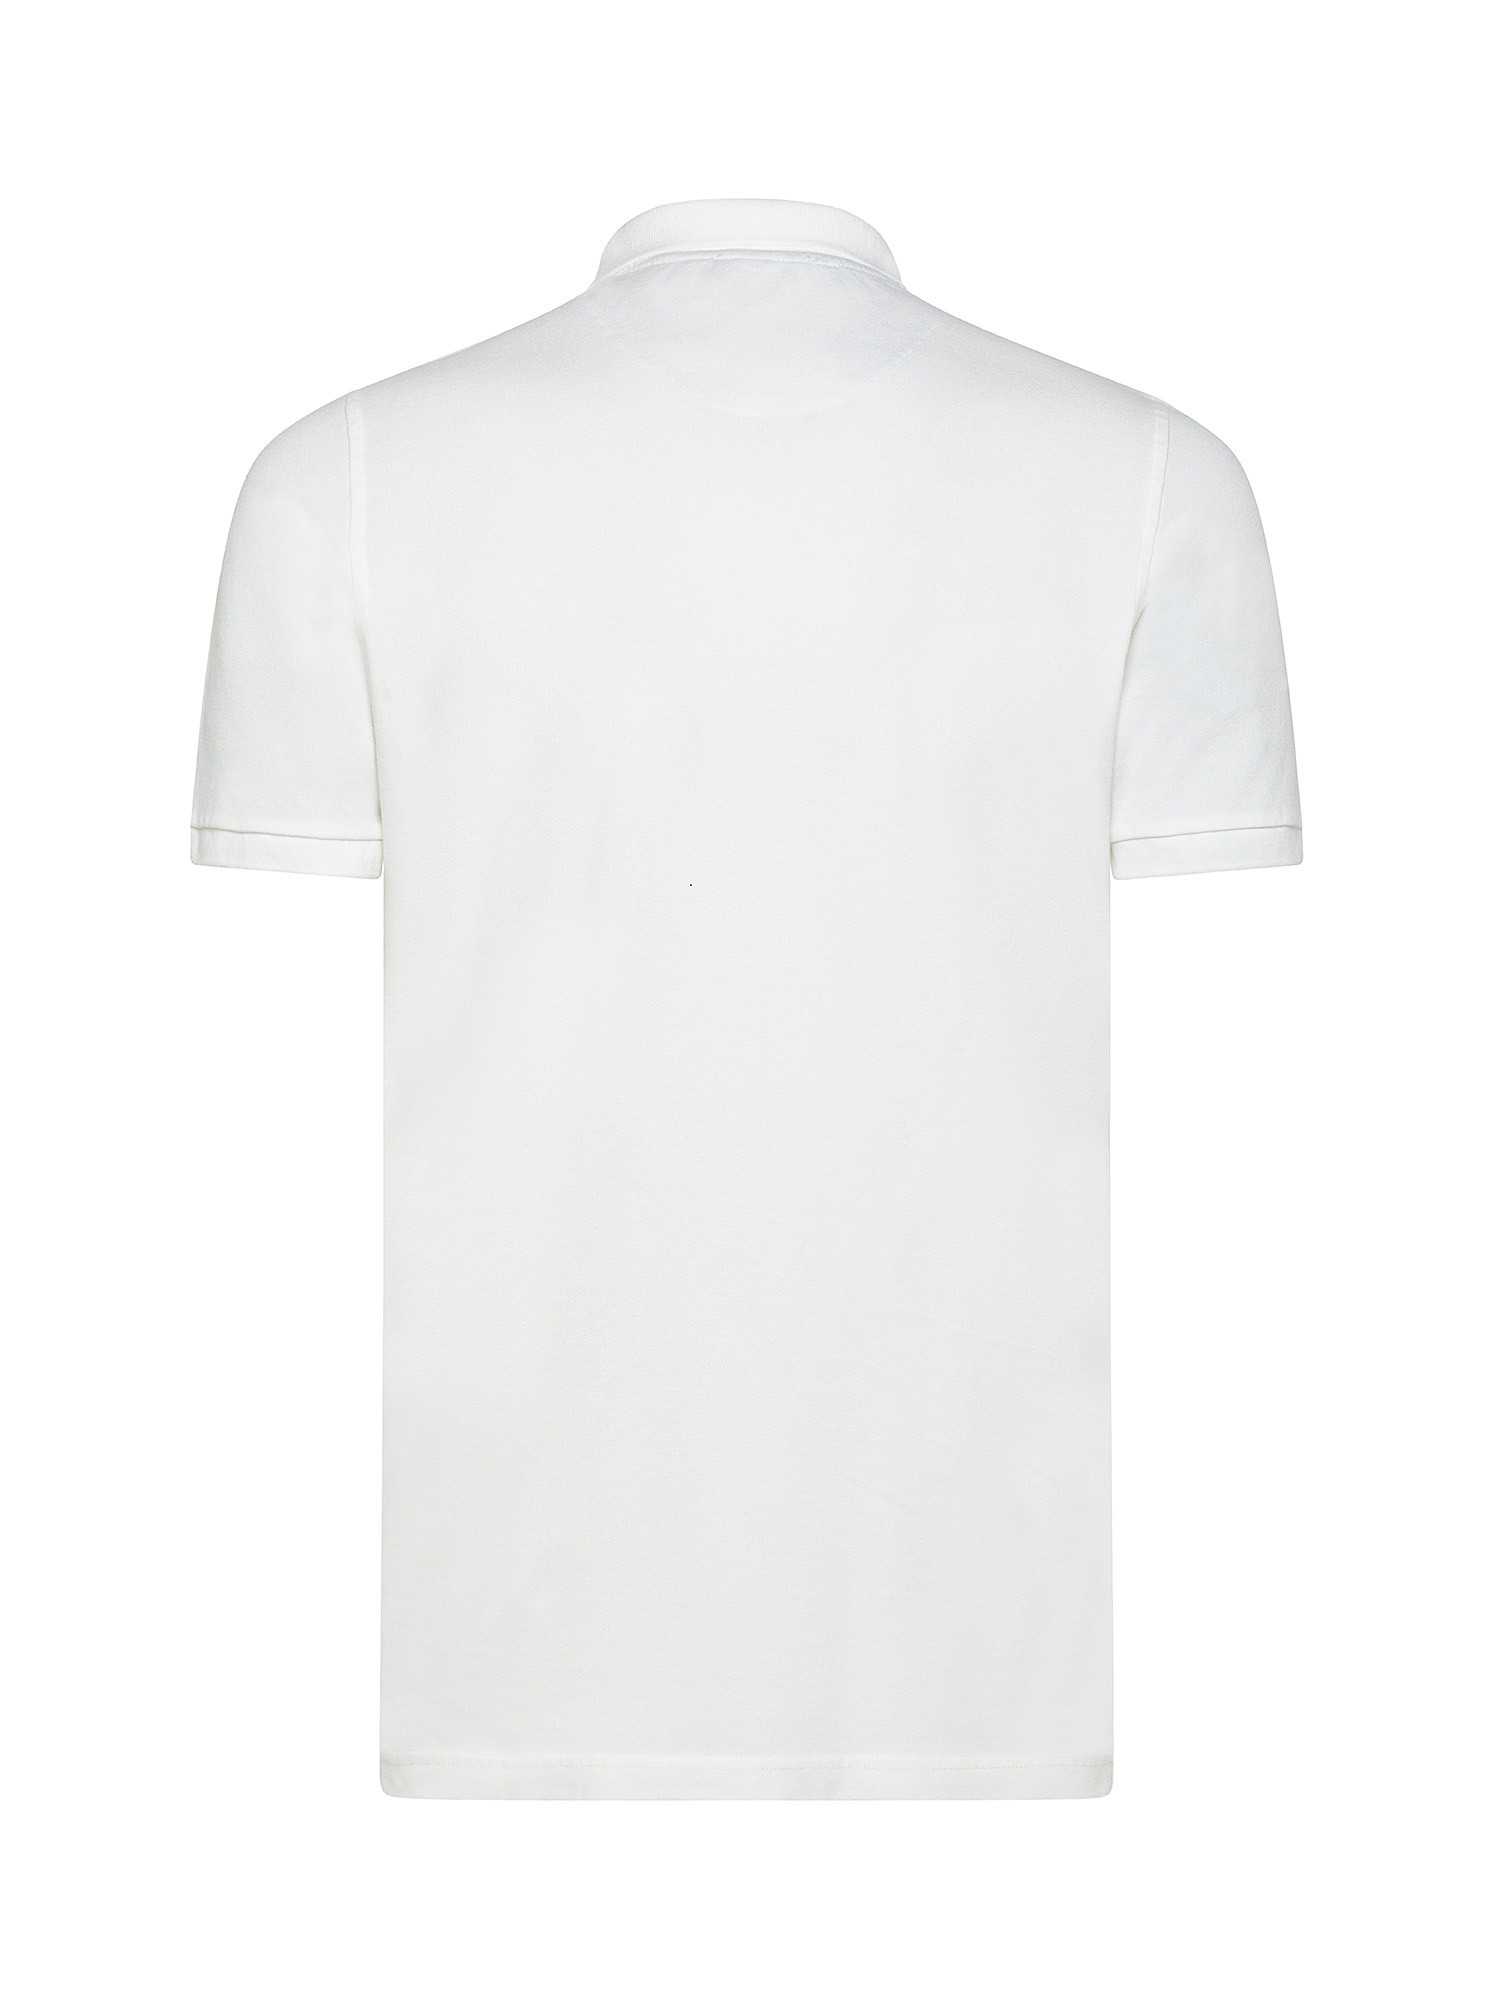 Short sleeve polo shirt, White, large image number 1